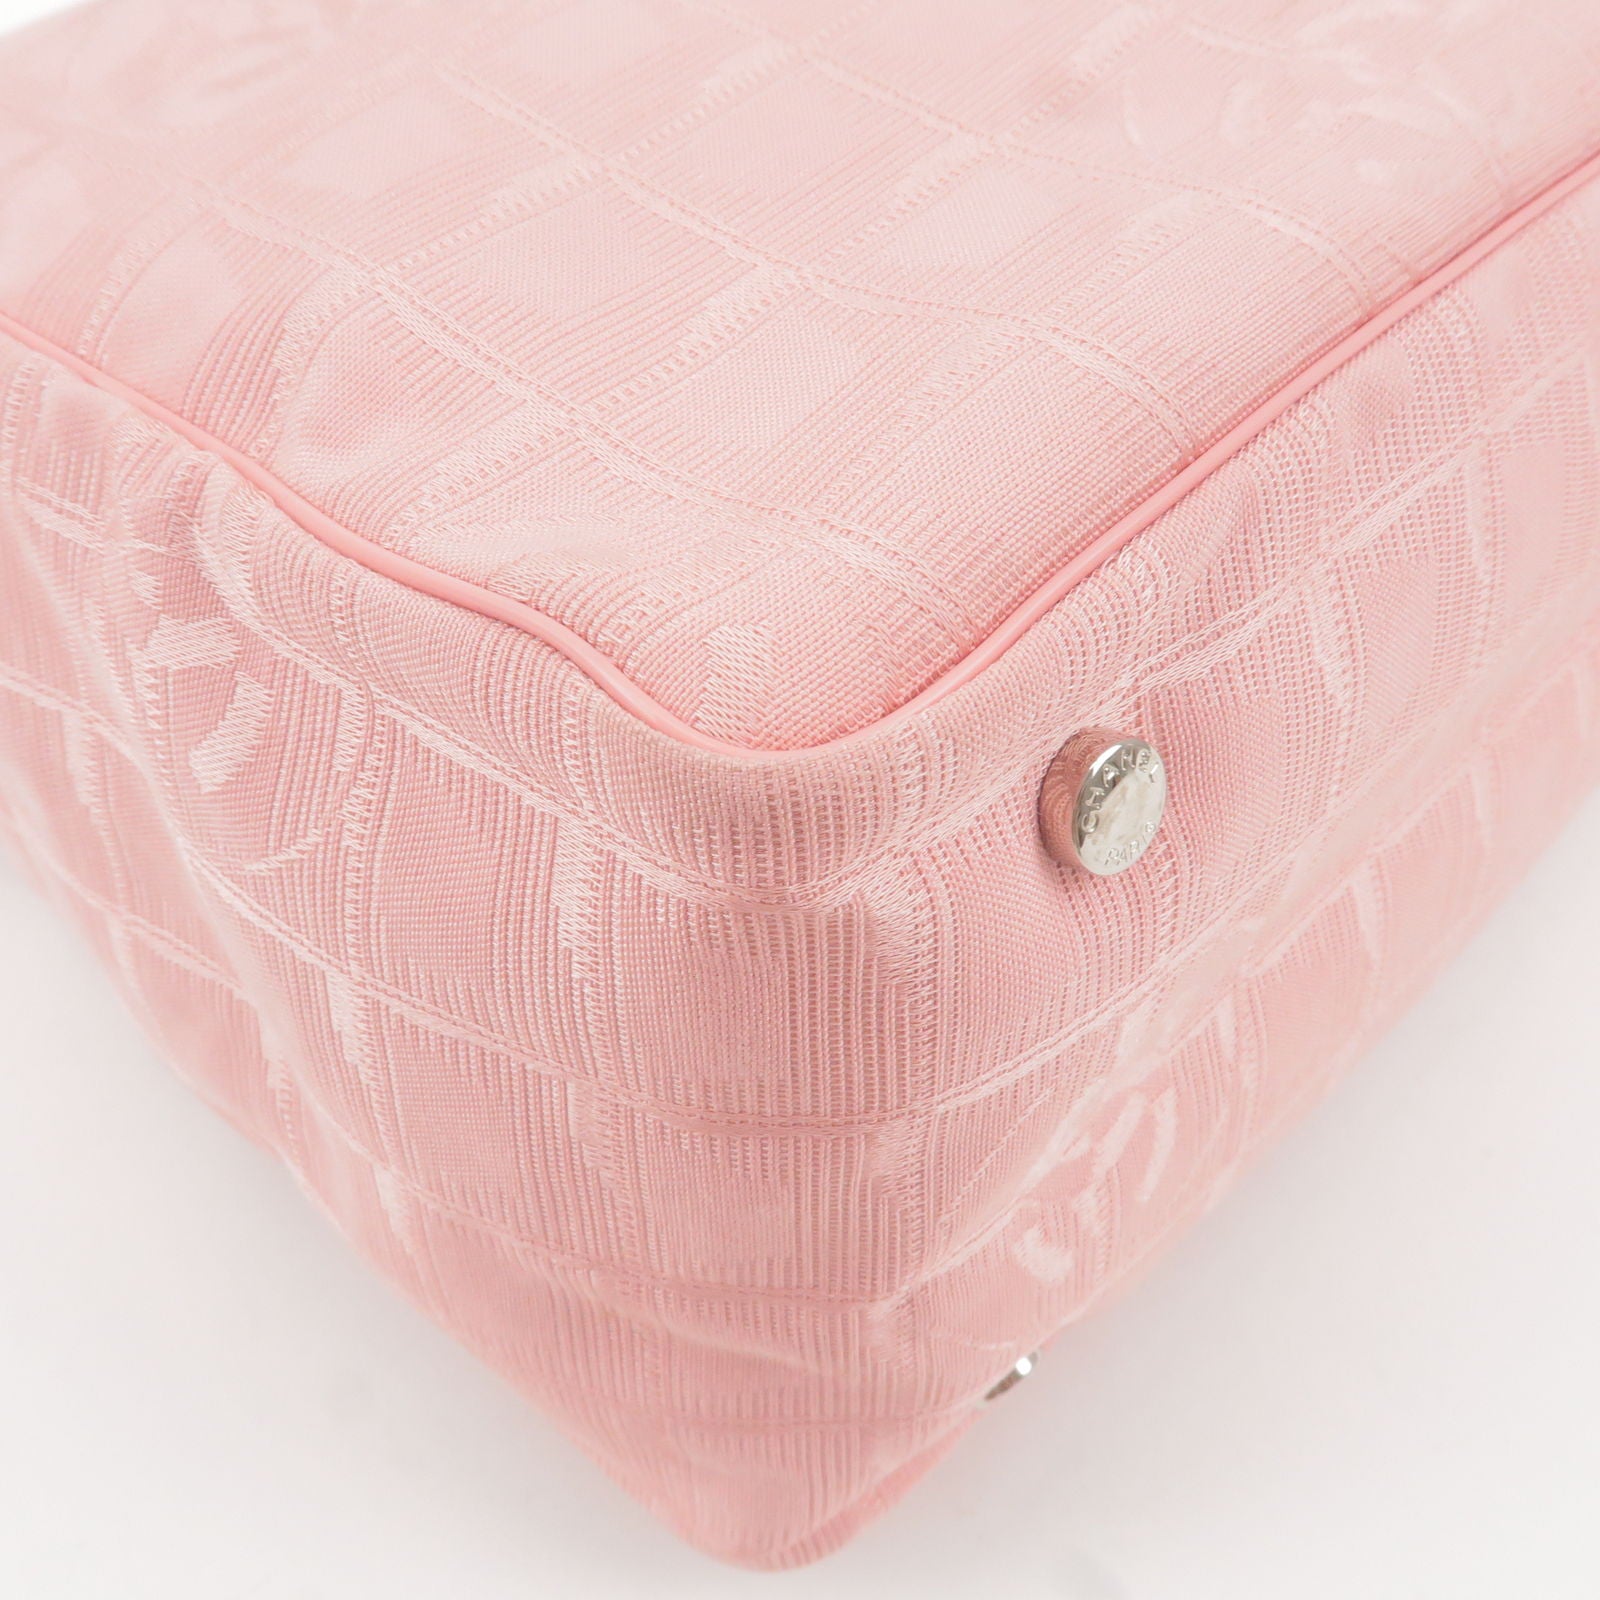 CHANEL-Travel-Line-Nylon-Jacquard-Leather-Shoulder-Bag-Pink-A30913